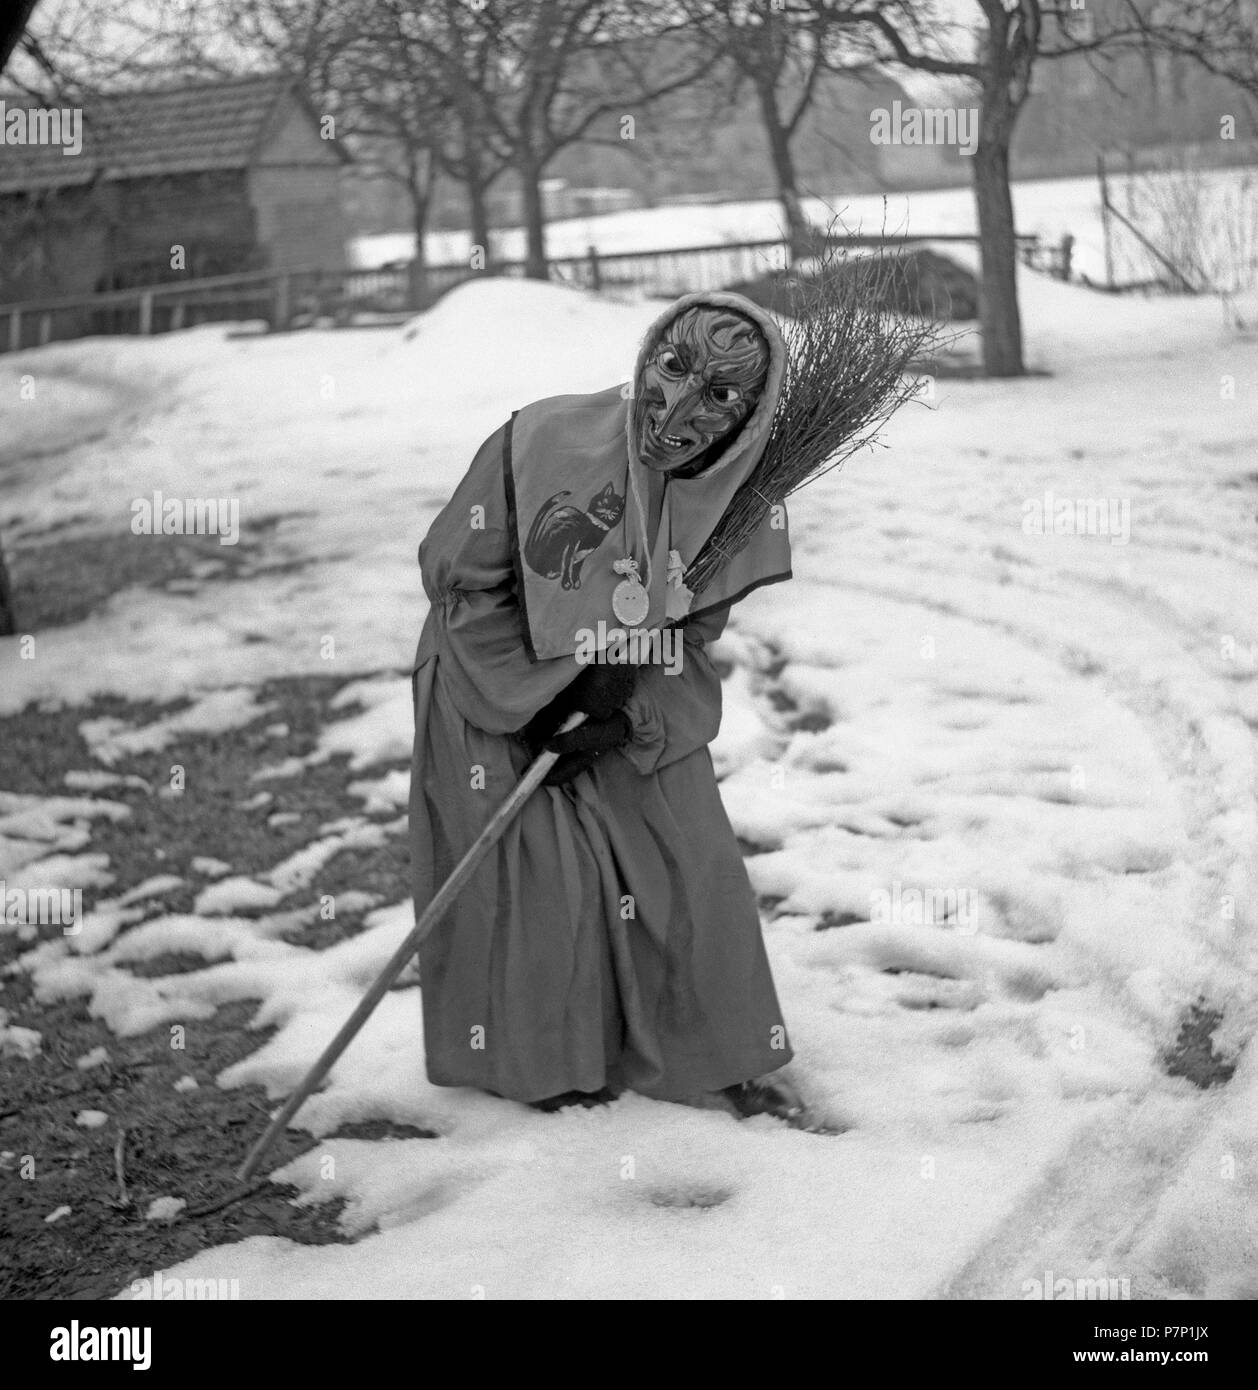 Sorcière avec balai en main est dans une position curviligne dans la neige, carnaval, autour de 1950, près de Fribourg, Allemagne Banque D'Images